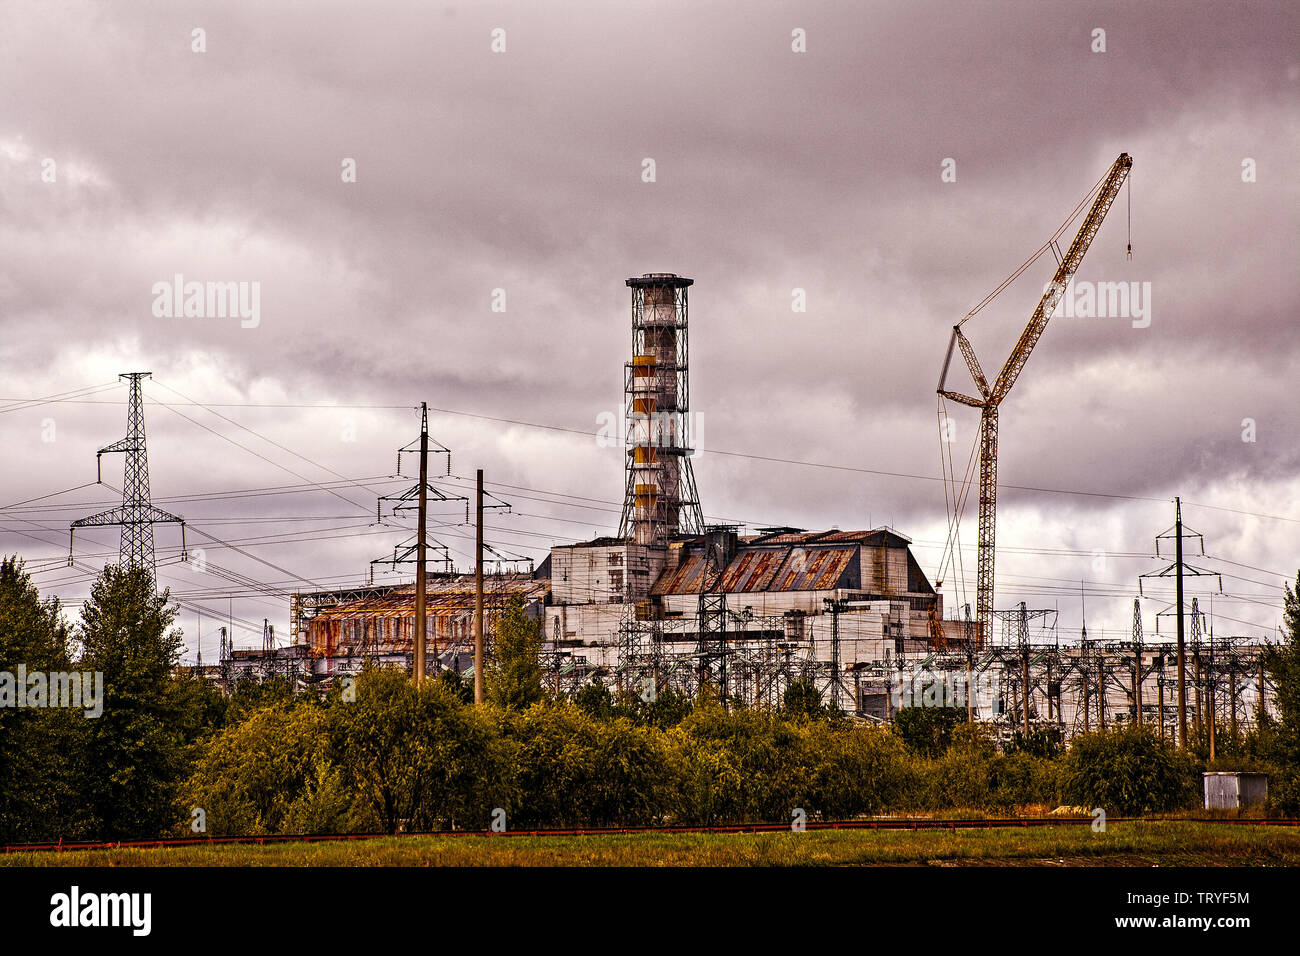 Chernobyl, Pripryat ucraina. Si tratta di un reattore 4, il reattore che ha preso fuoco e ha provocato l'incidente nucleare di Chernobyl fatti un nome familiare, e in definitiva ha causato la caduta del muro di Berlino. Si trova sul fiume Pripryat, che è stata usata per raffreddare il nucleo. Si tratta di uno dei sei reattori tutti vicini tra loro. La centrale nucleare di Cernobyl è a nord di Ucraina, molto vicino al confine con la Bielorussia. Chernobyl stessa è stata superata in dimensioni e importanza del nuovo Atomic City di Pripryat, ad appena un paio di Kilomteres da questo reattore. Foto Stock